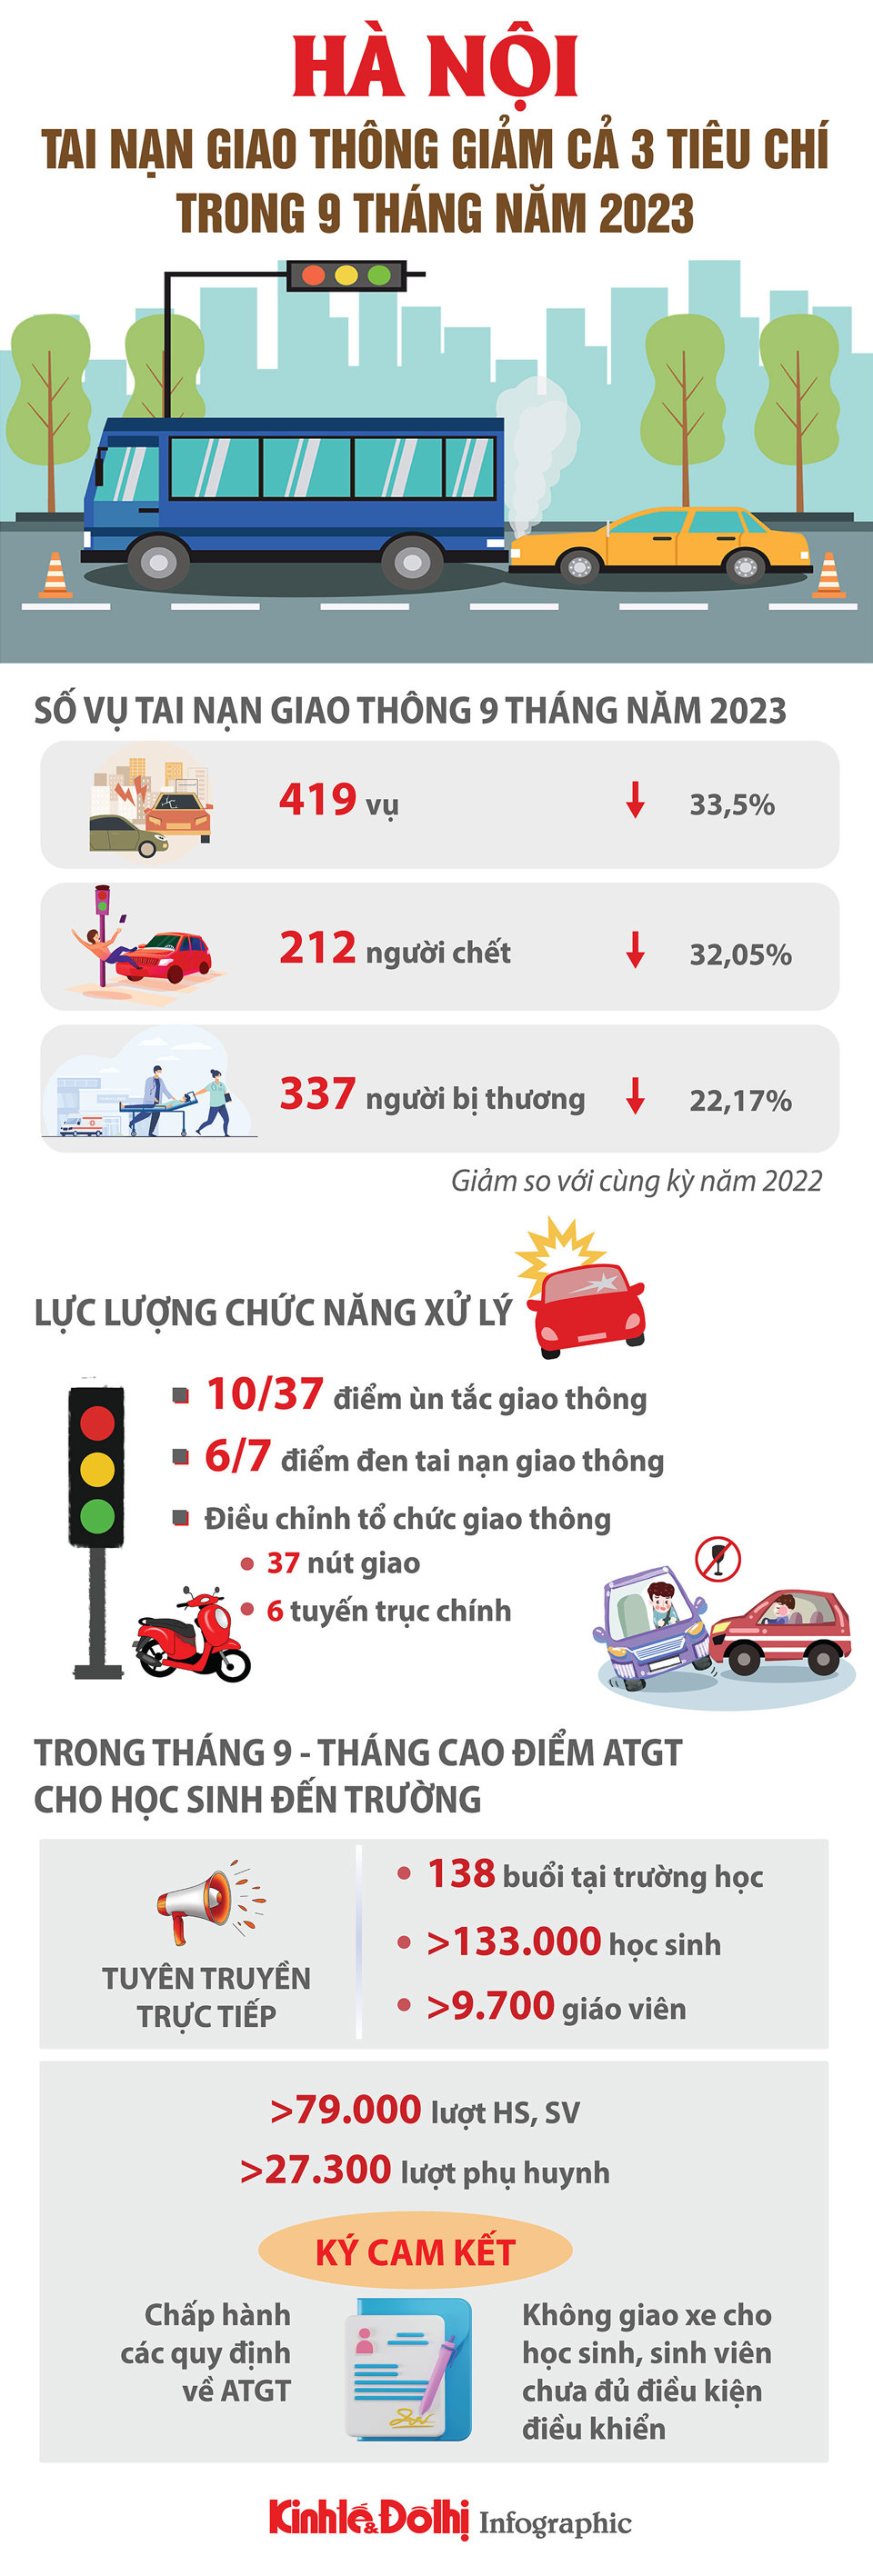 Hà Nội: Tai nạn giao thông giảm sâu cả 3 tiêu chí - Ảnh 1